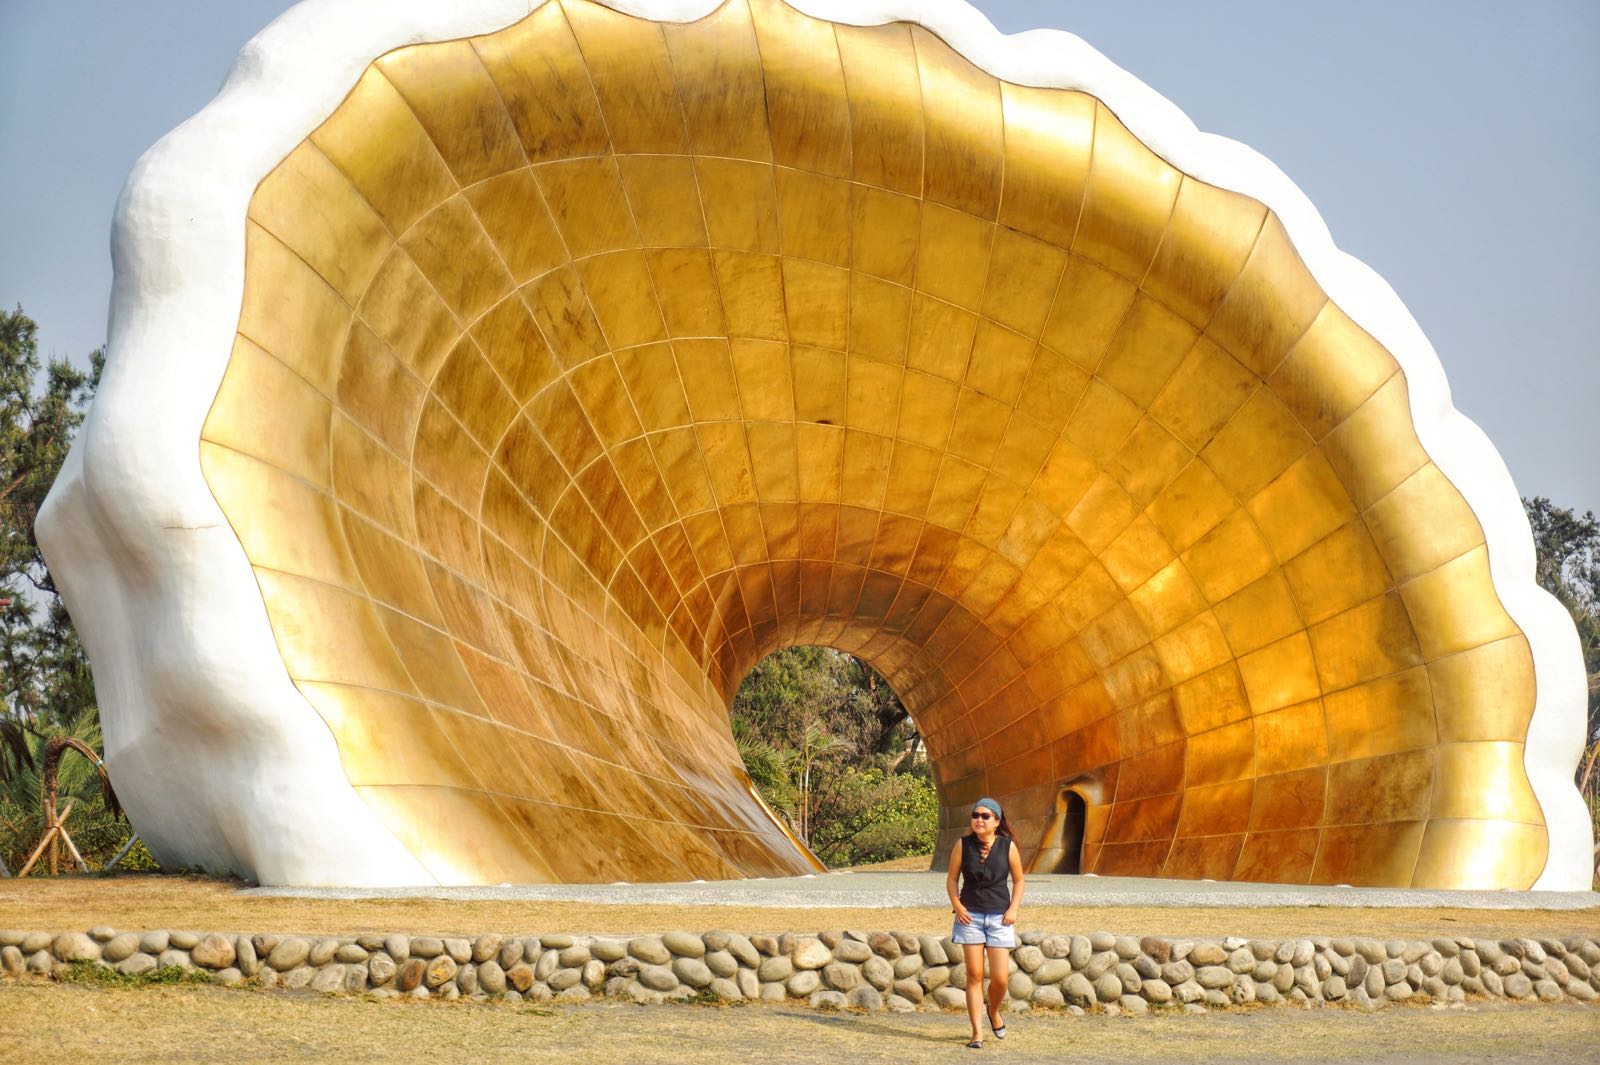 Giant Shell Di Cijin Island